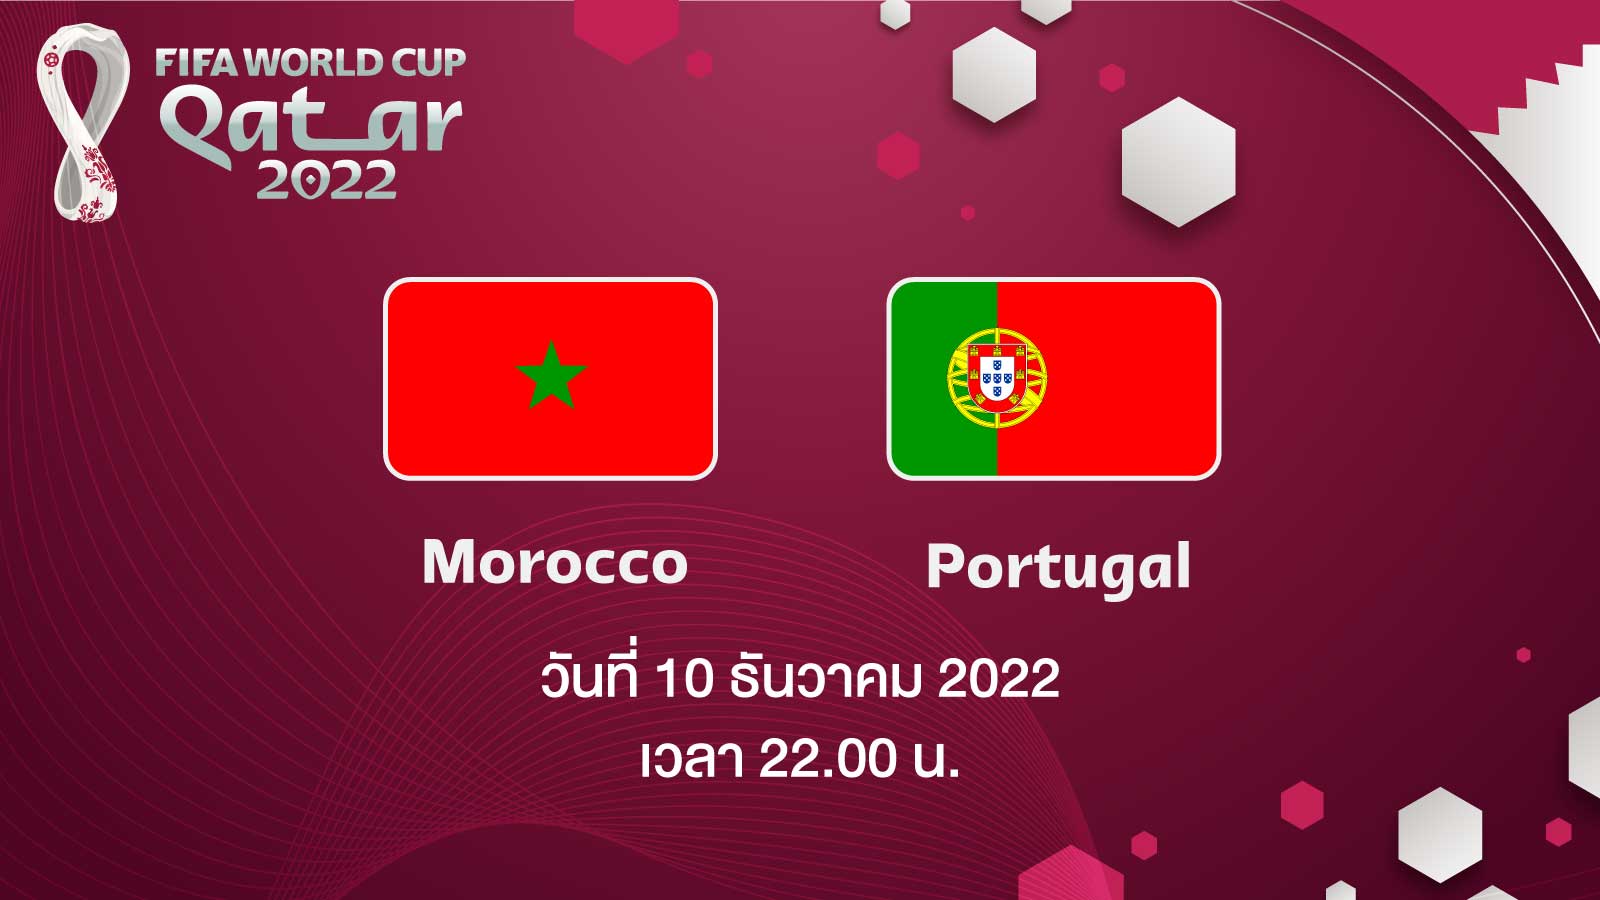 ฟุตบอลโลก 2022 รอบ 8 ทีมสุดท้าย ระหว่าง Morocco vs Portugal